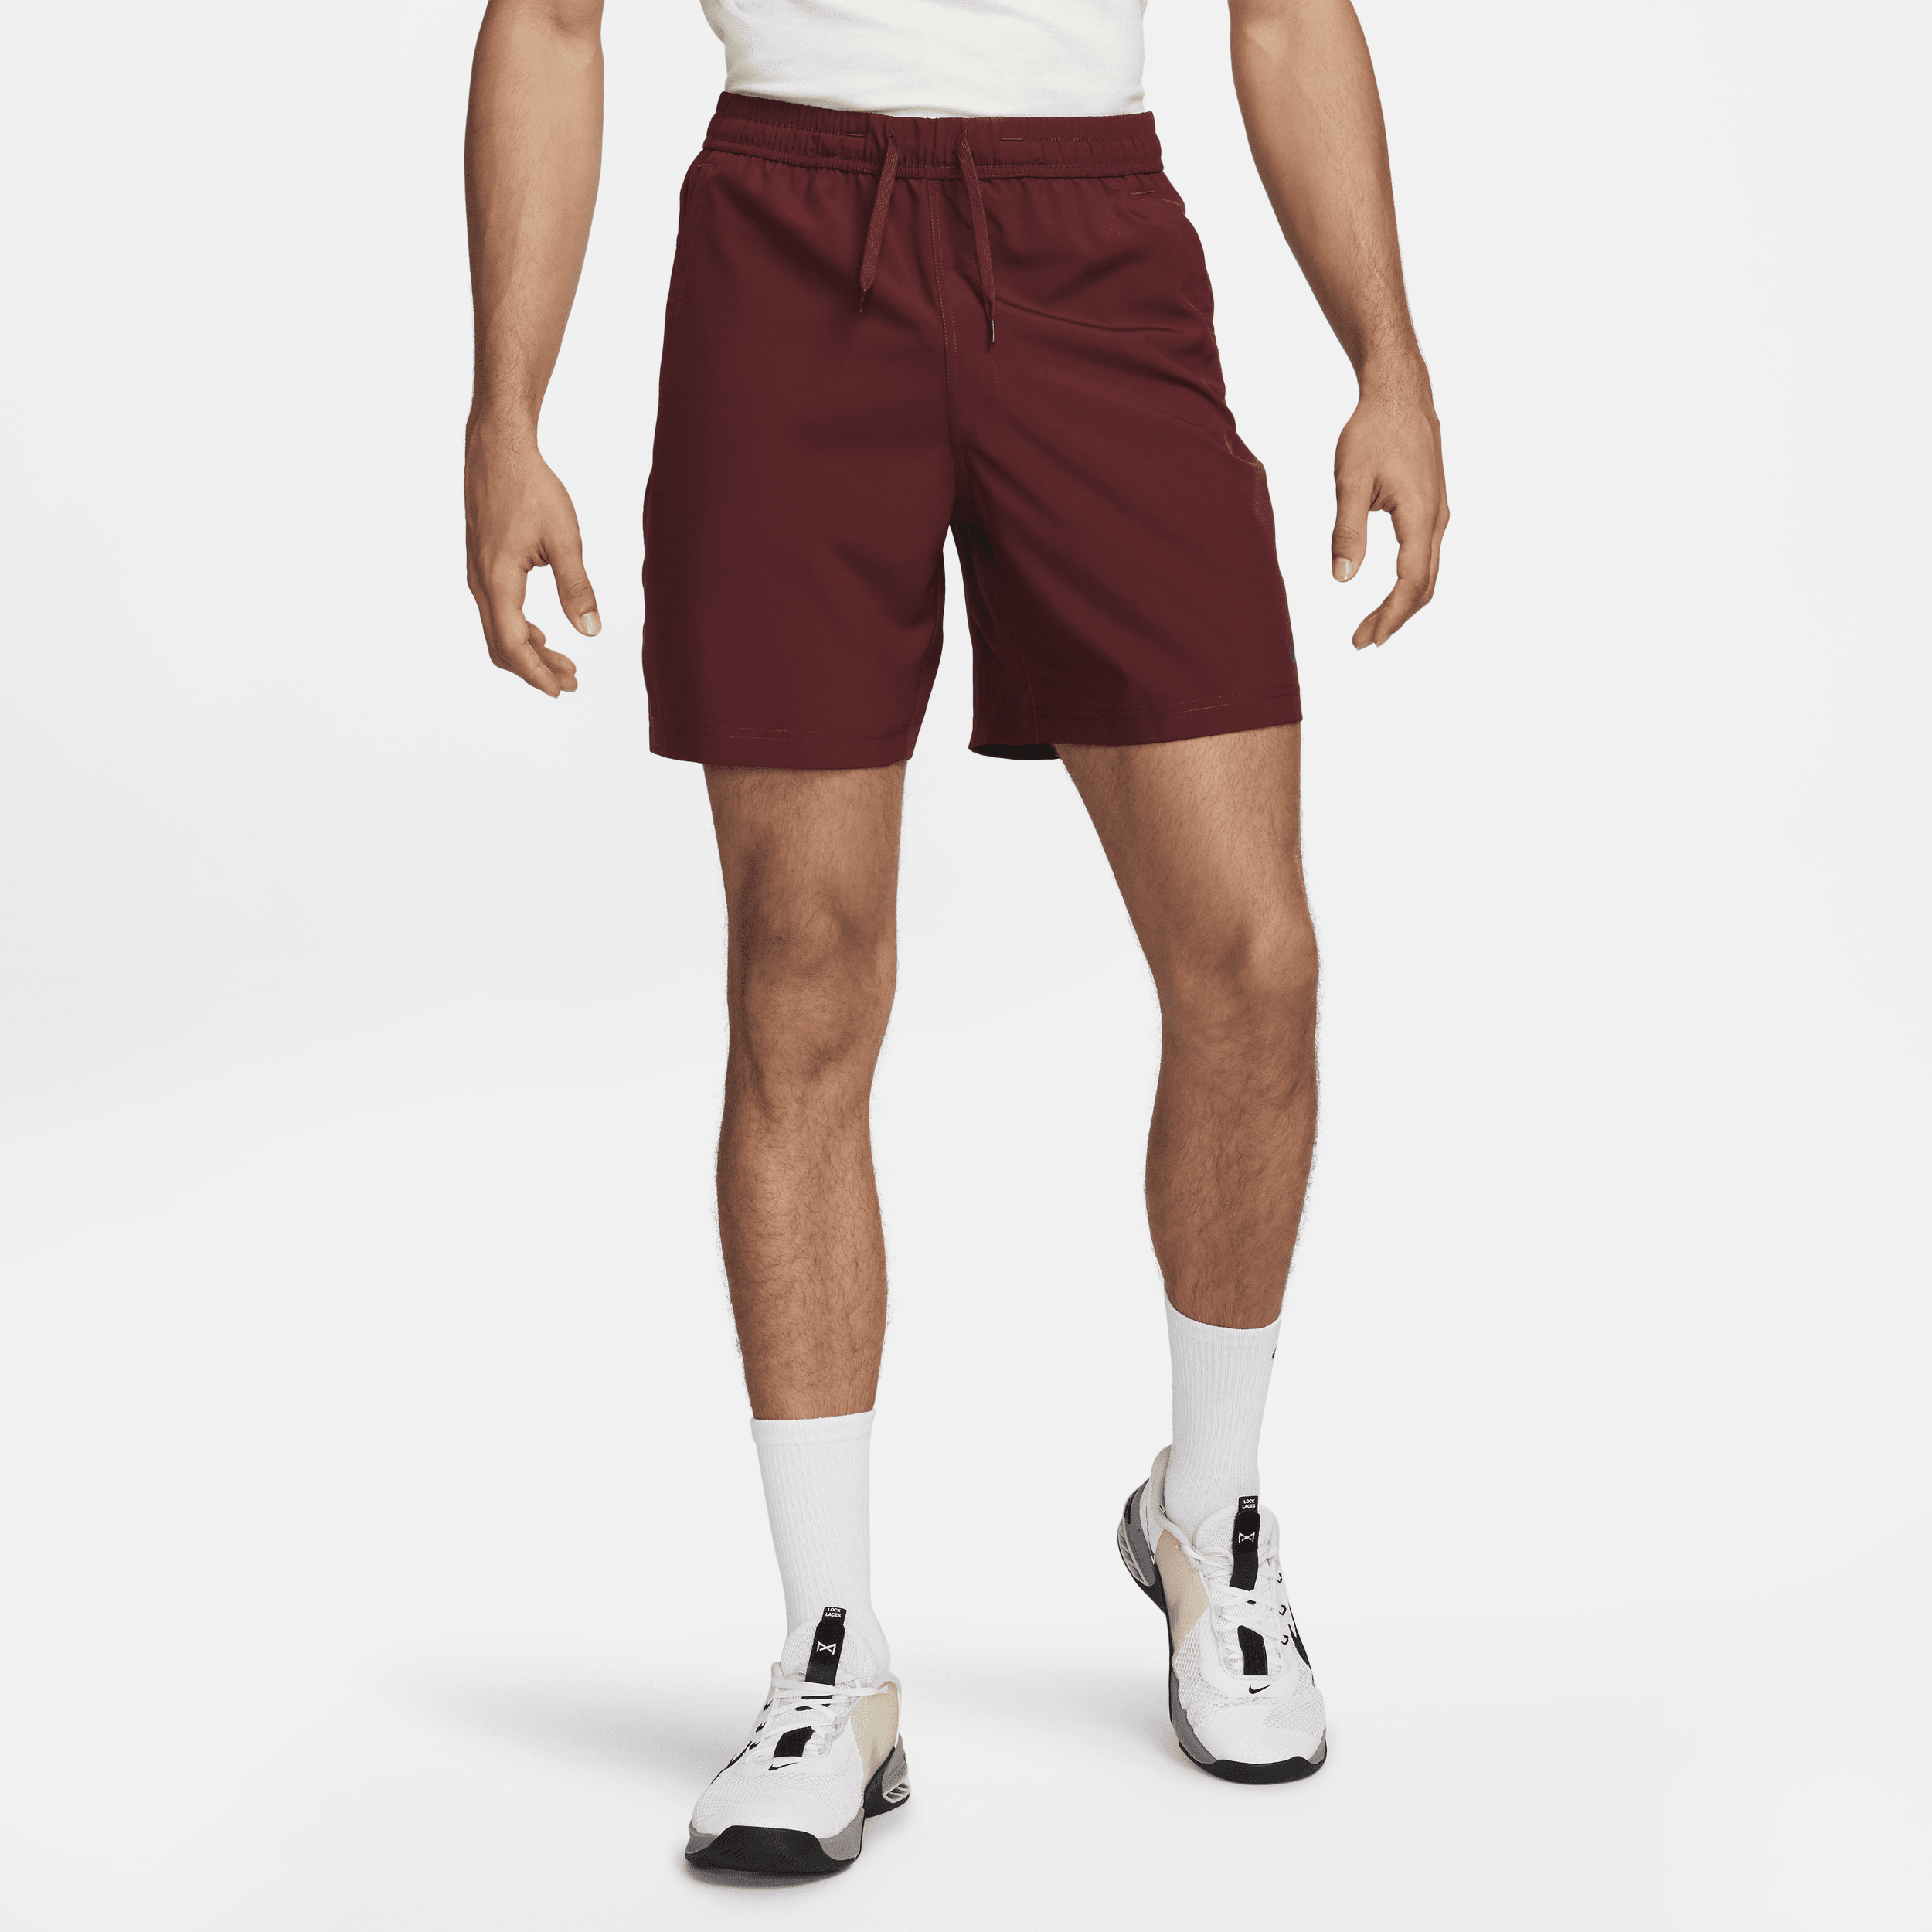 Shorts versatili Dri-FIT non foderati 18 cm Nike Form – Uomo - Rosso